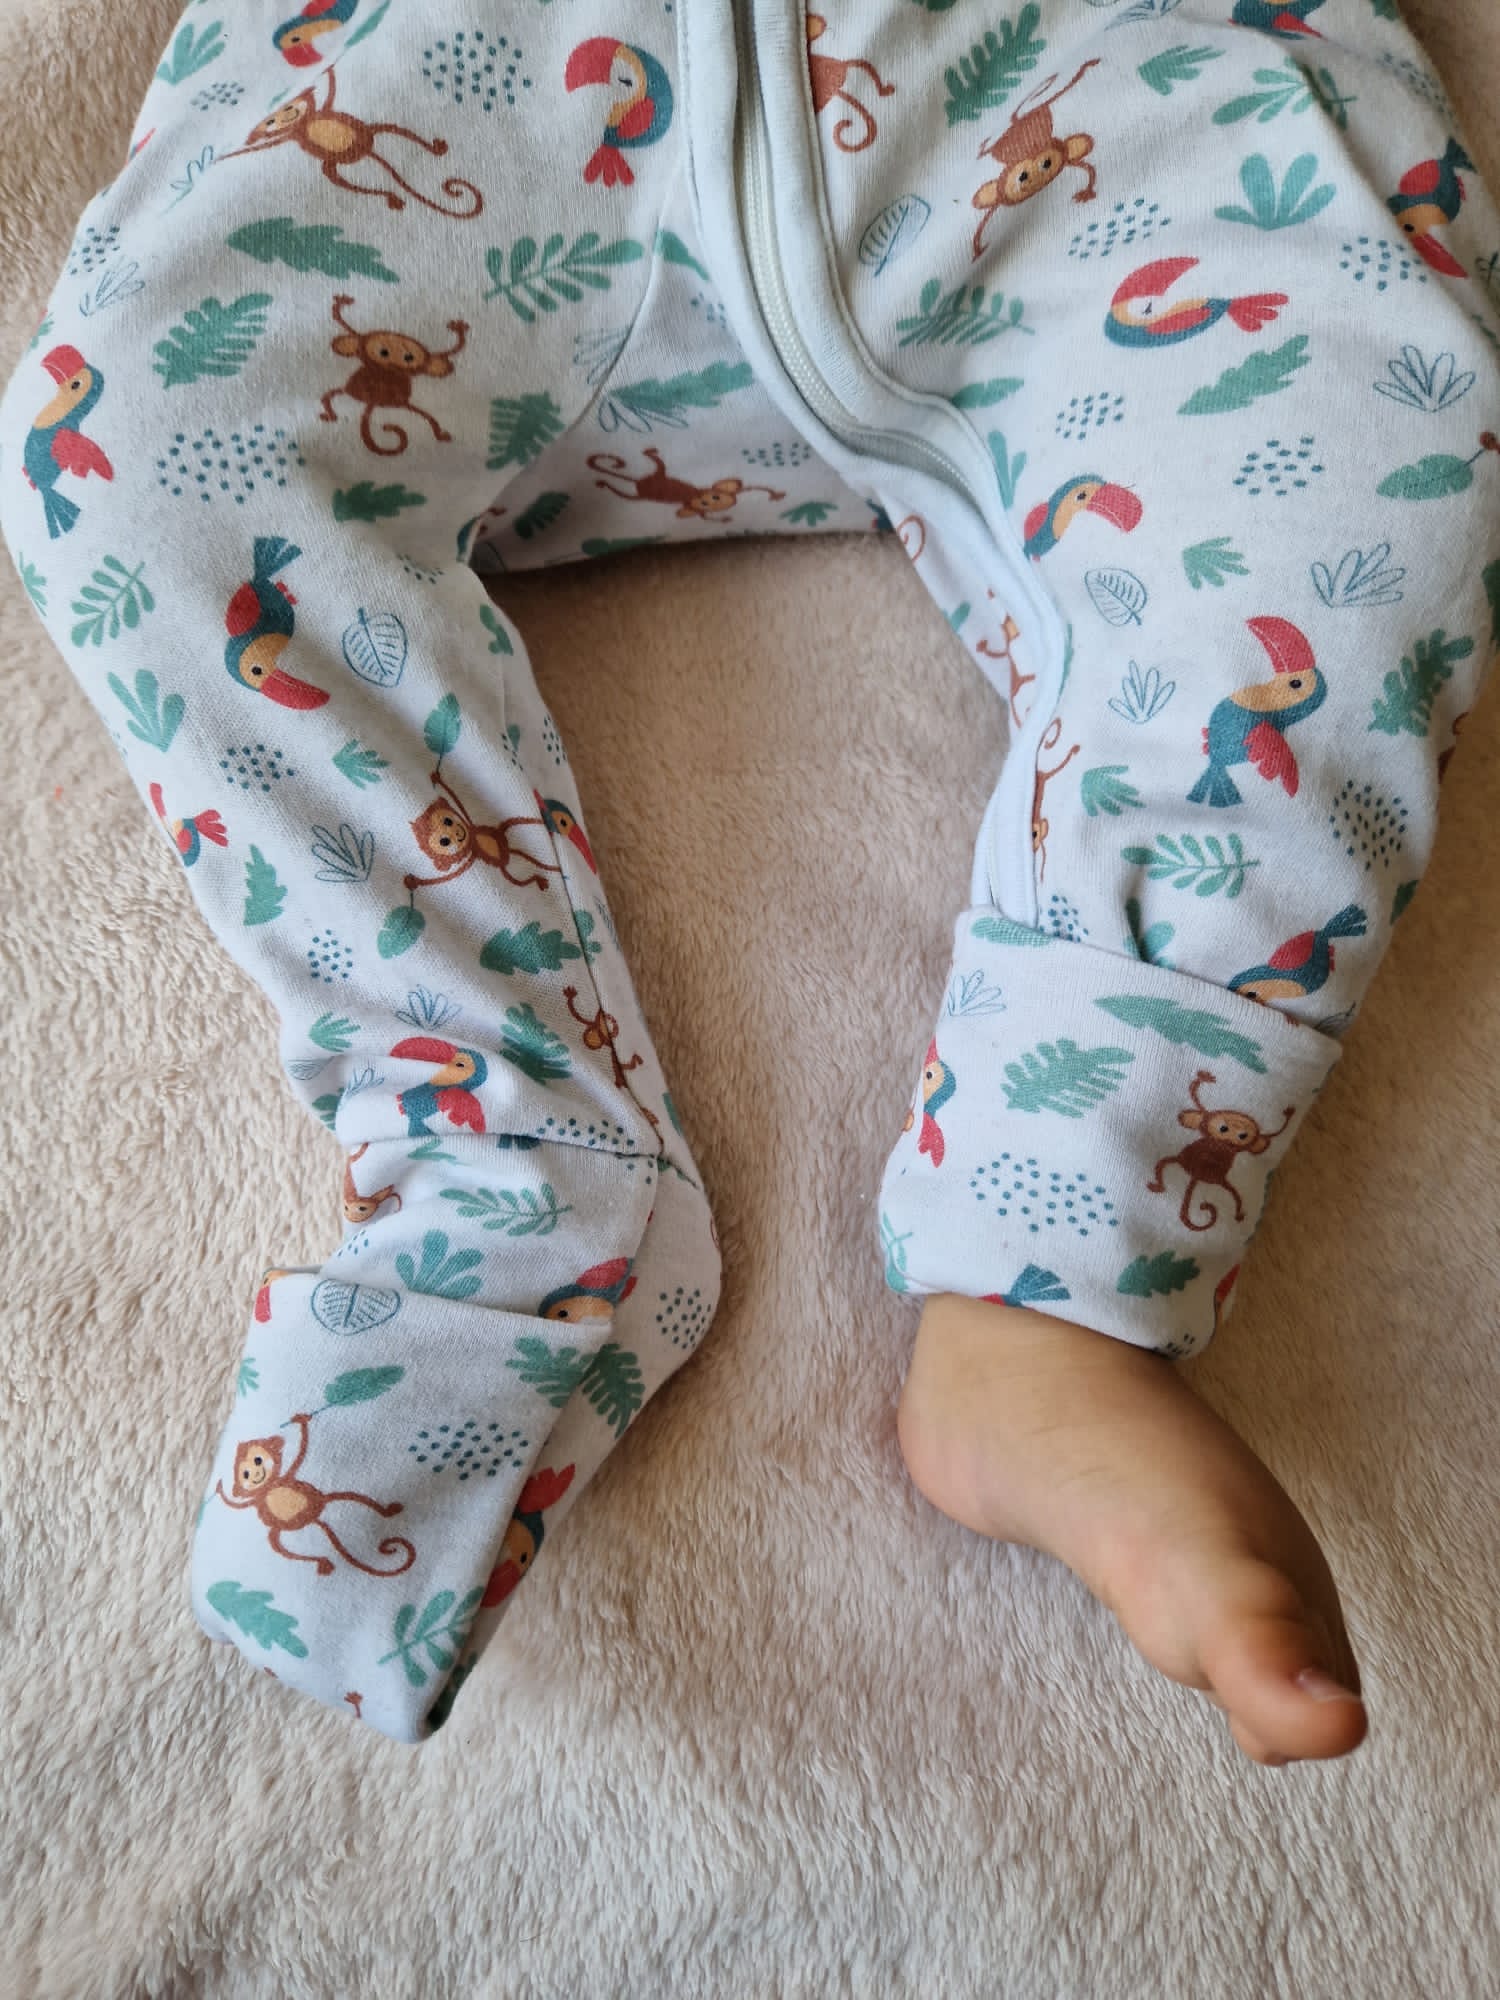 Focus sur les pieds de bébé portant le pyjama. Démonstration des chaussettes retroussables: un pied à l'air libre montrant la chaussette retroussée et un autre pied au chaud montrant la chaussette fermée.